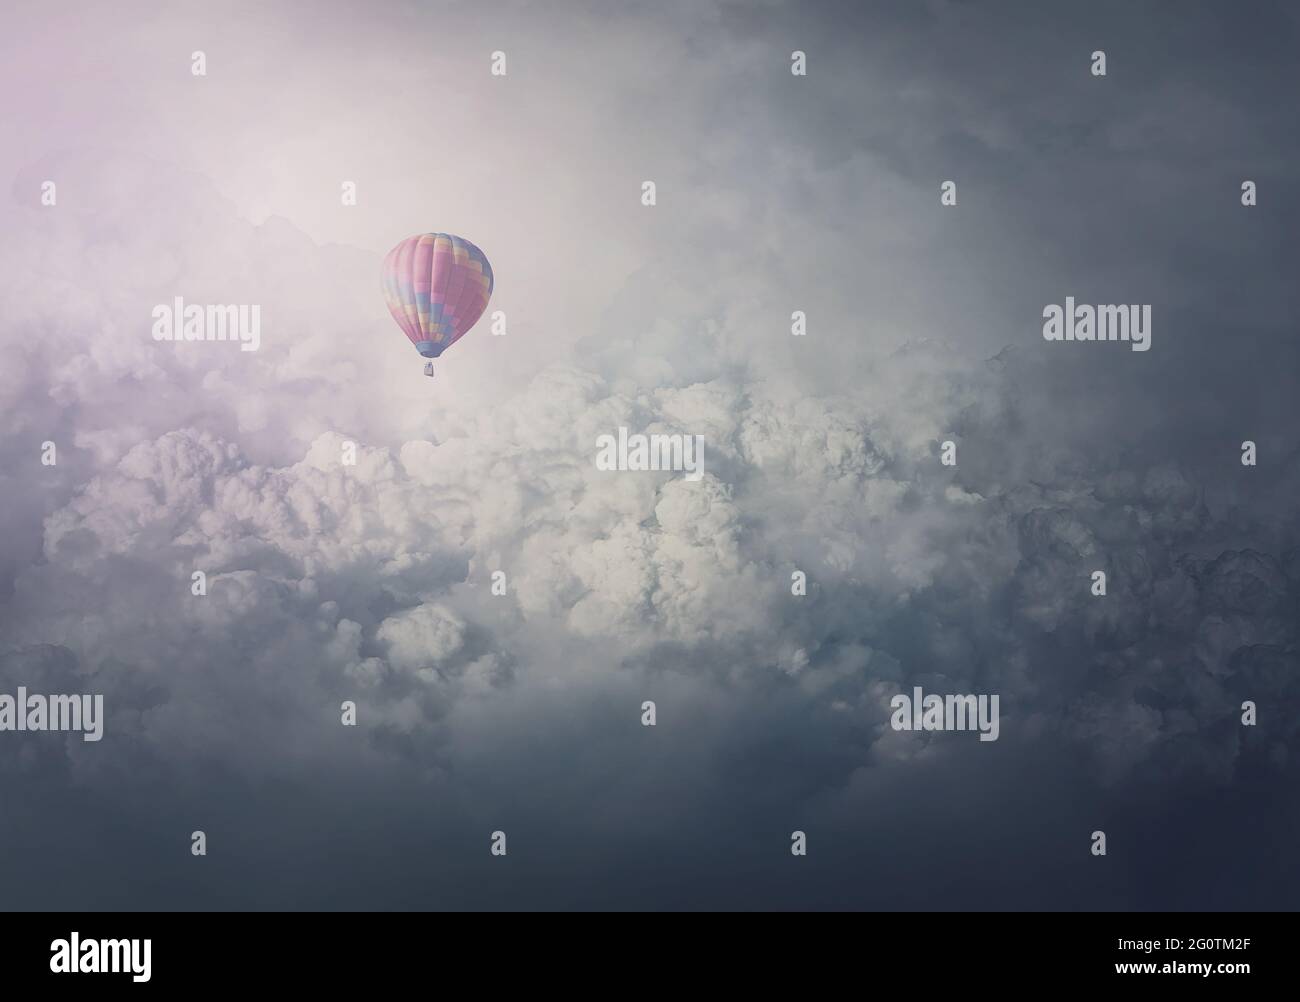 Wunderbares Abenteuer, epische Szene mit einem Heißluftballon, der über den Wolken fliegt. Fabelhafte minimalistische Aussicht, Luftschiff schwebend in den Himmel. Reisen und journ Stockfoto